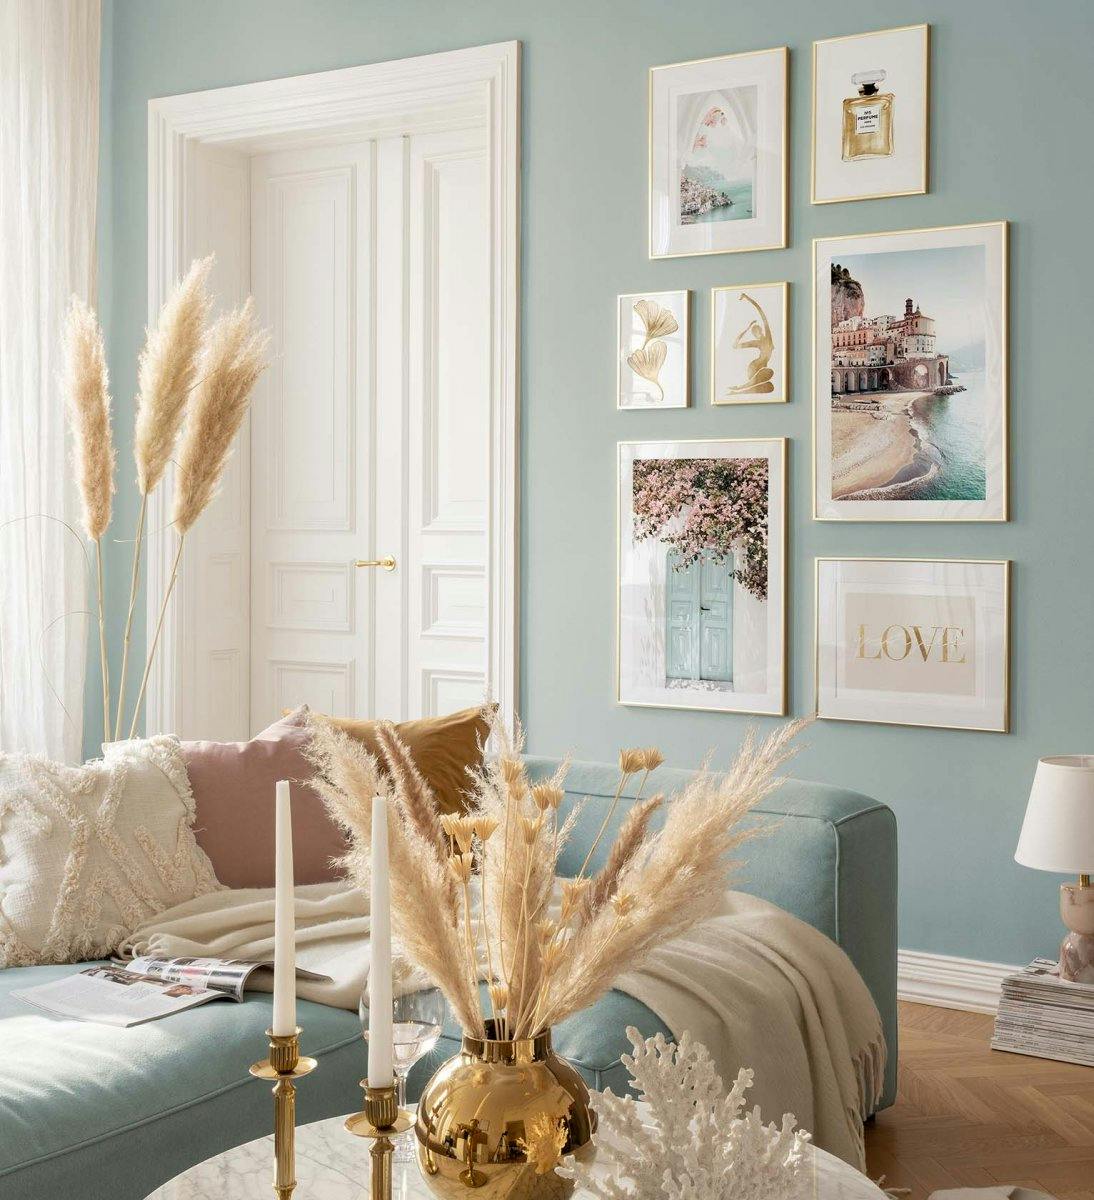 جدار معرض استوائي باللونين الأزرق والبيج مع إطارات ذهبية لغرفة المعيشة